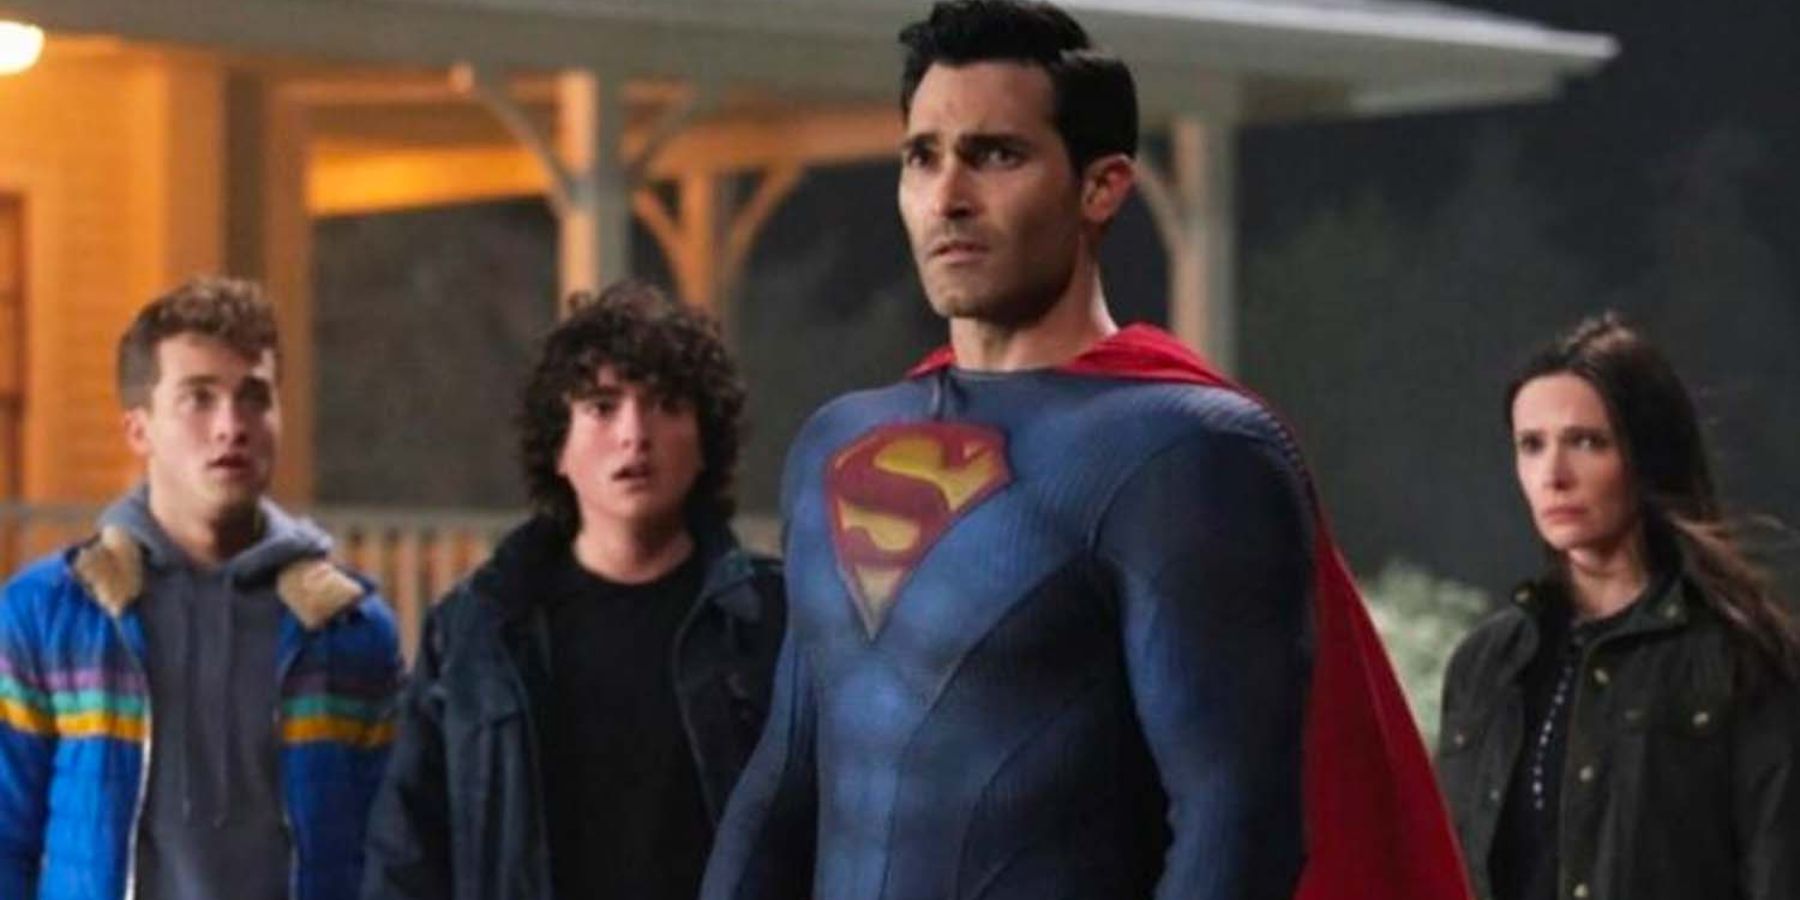 スーパーマンとロイスセットの写真がタイラー・ホーヒリンの新しいスーパースーツを明らかにします